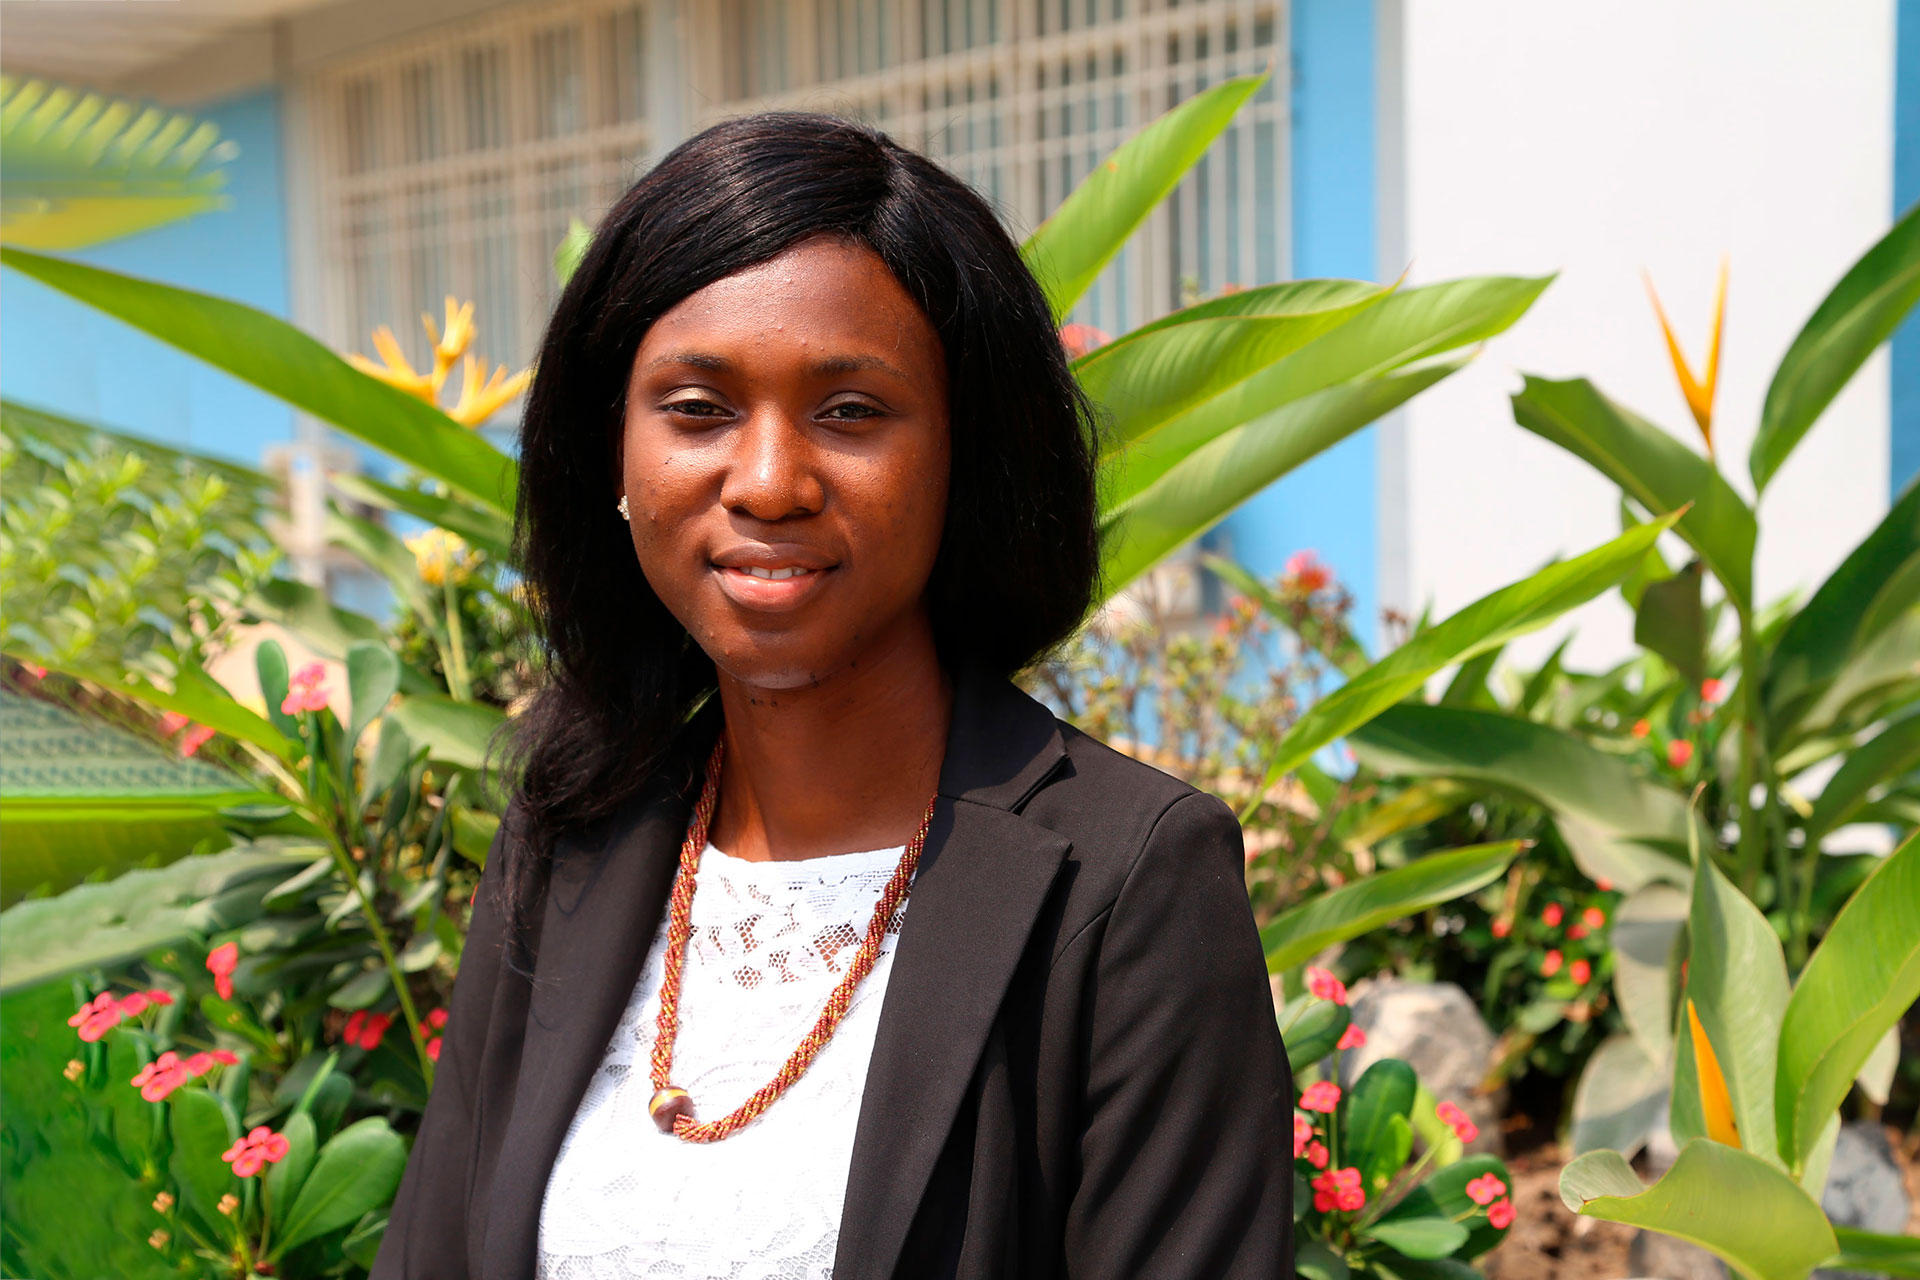 Wihelmina Duah, directora del Servicio de Salud del distrito de Mpohor, Ghana